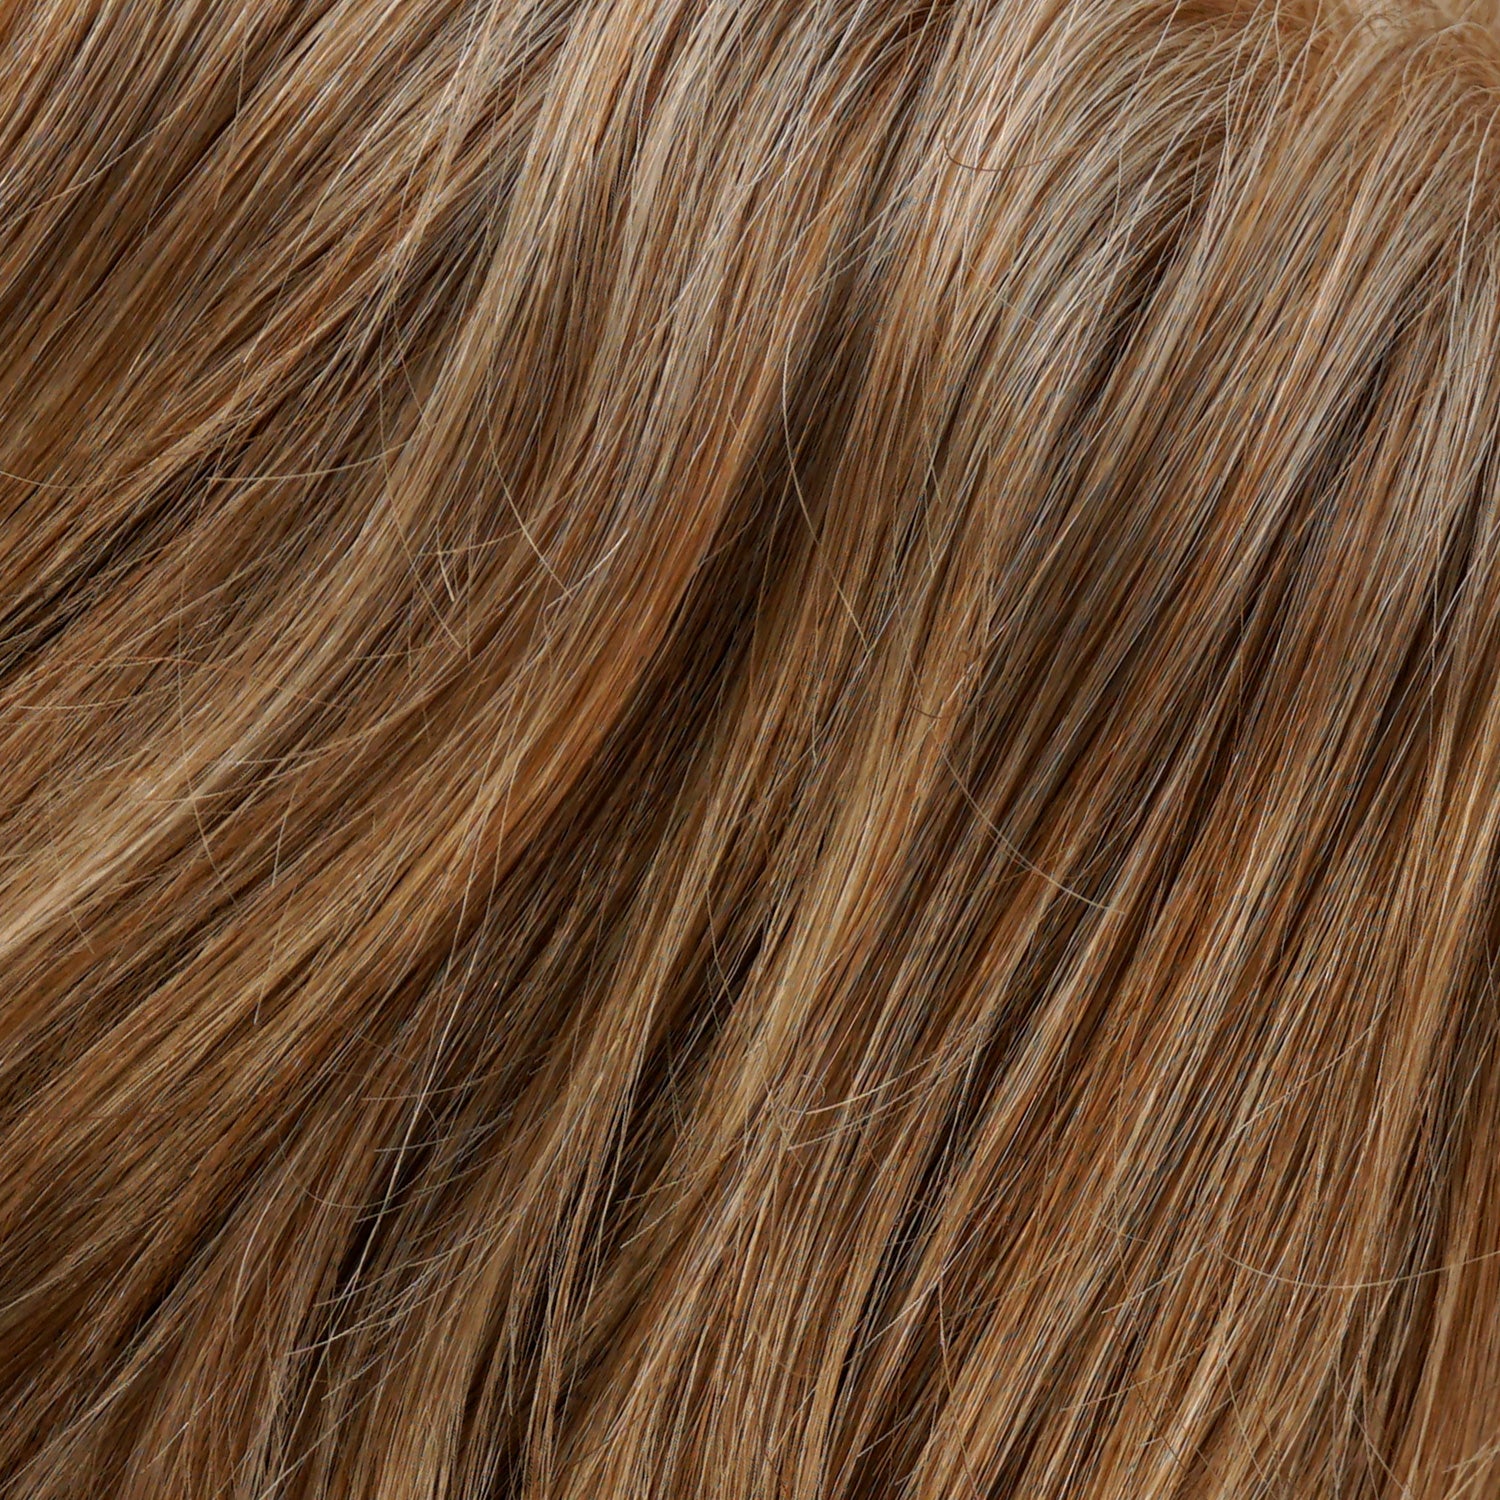 Perruque Cheveux Blonds Synthetiques Jon Renau Emilia Couleur 27t613f